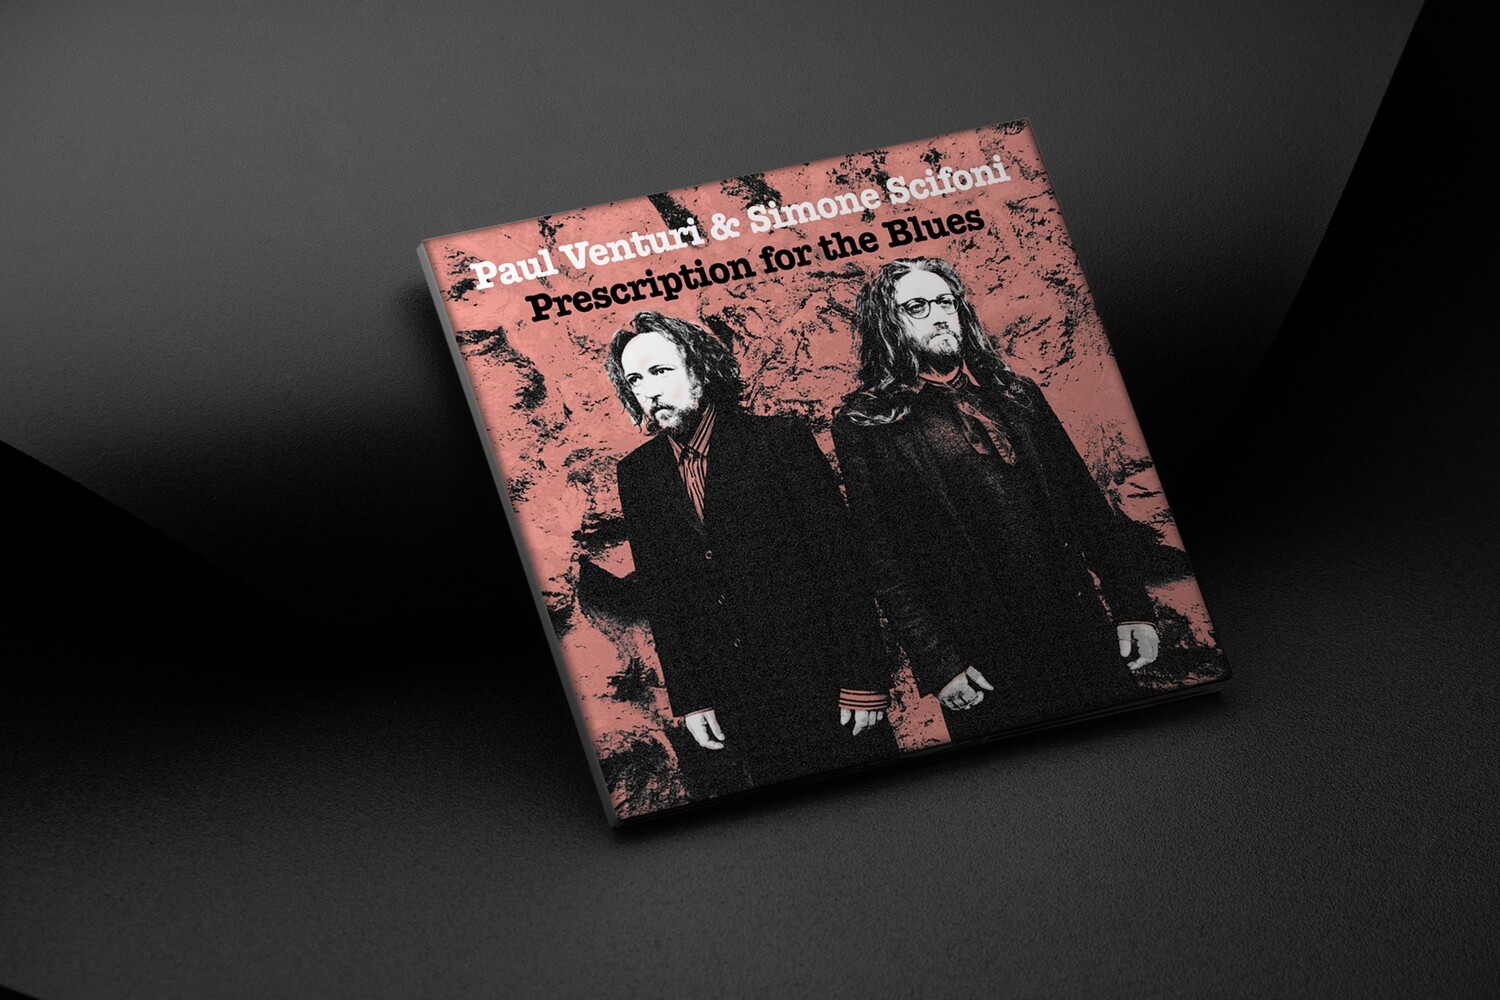 PAUL VENTURI & SIMONE SCIFONI - Prescription for the Blues (CD)